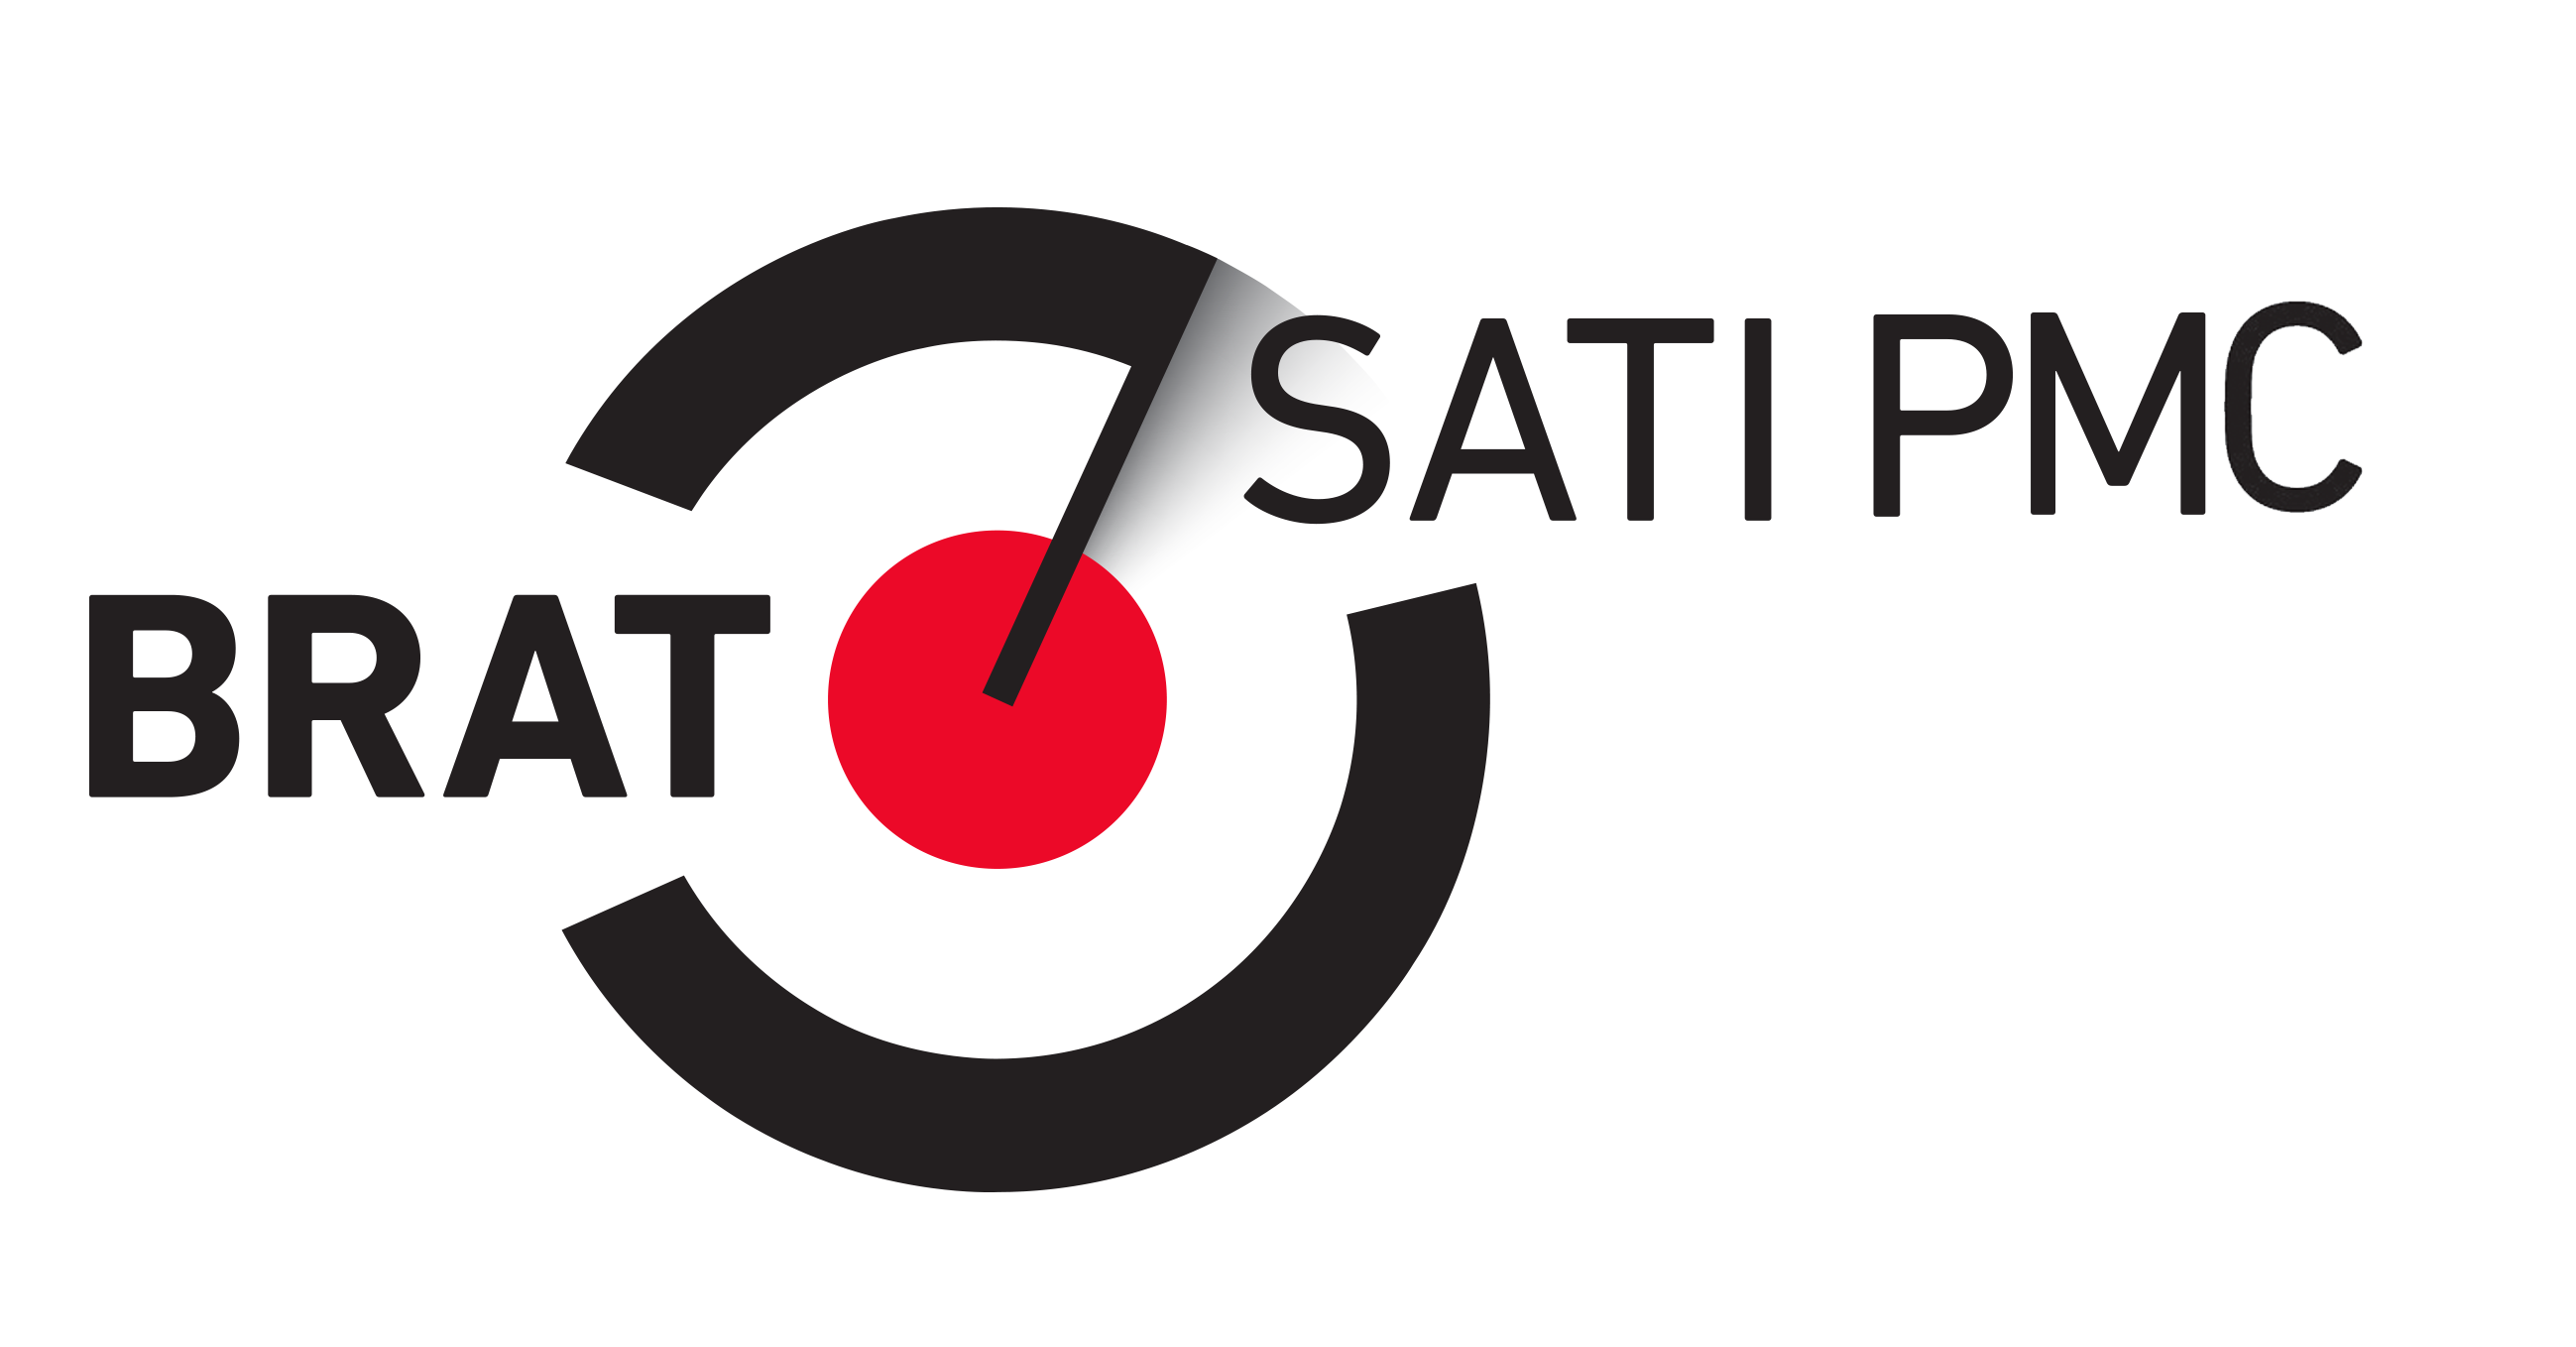 brat_logo SATI PMC.png (137 KB)